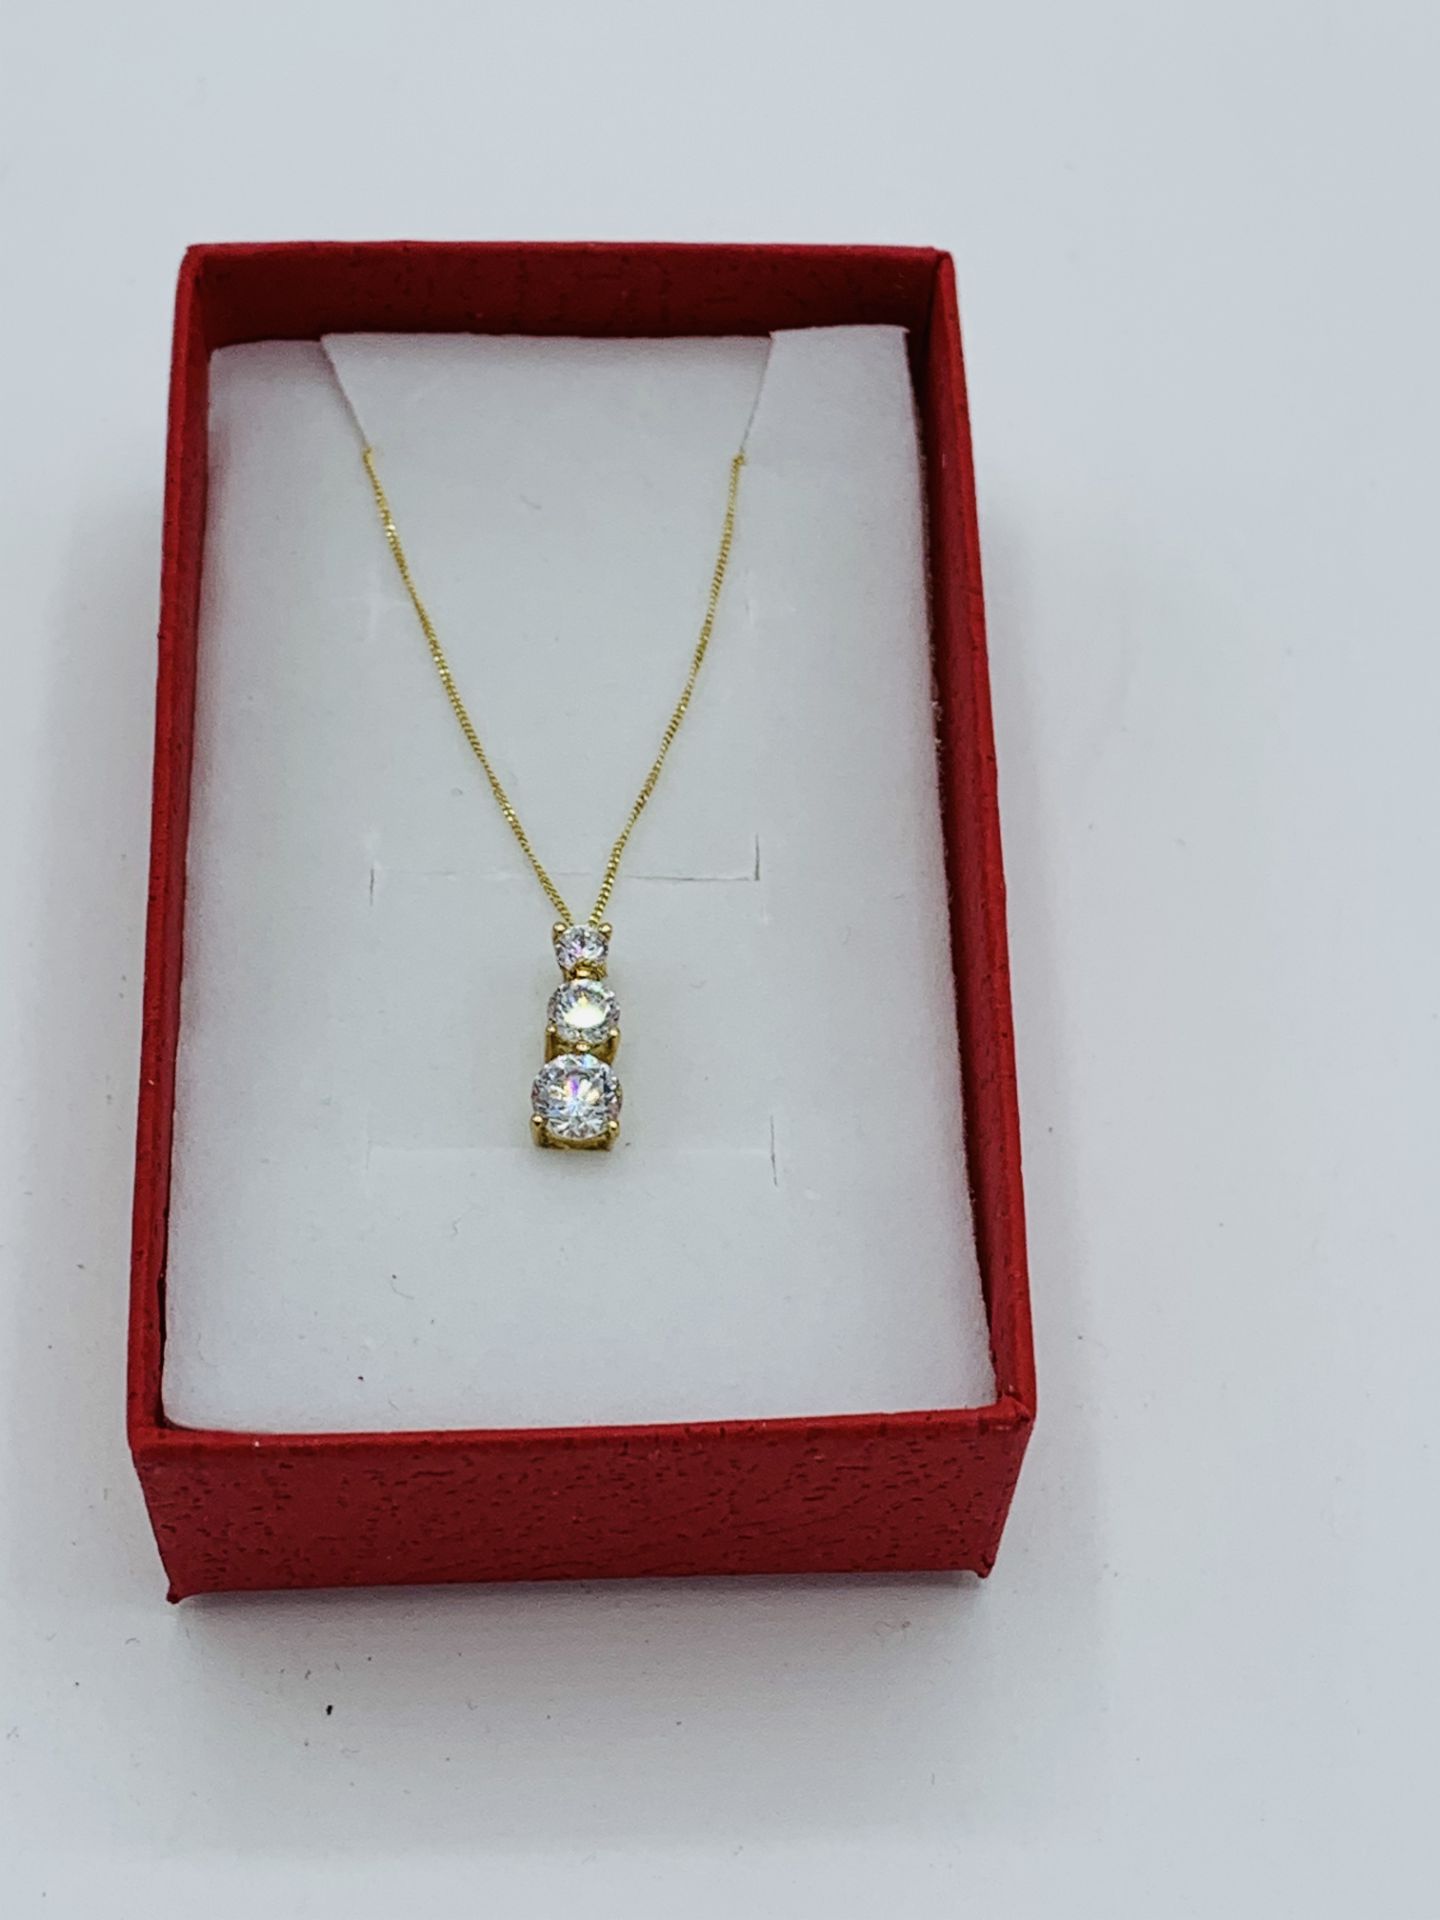 9ct gold pendant necklace set with three zircon stones. Estimate £30-40.